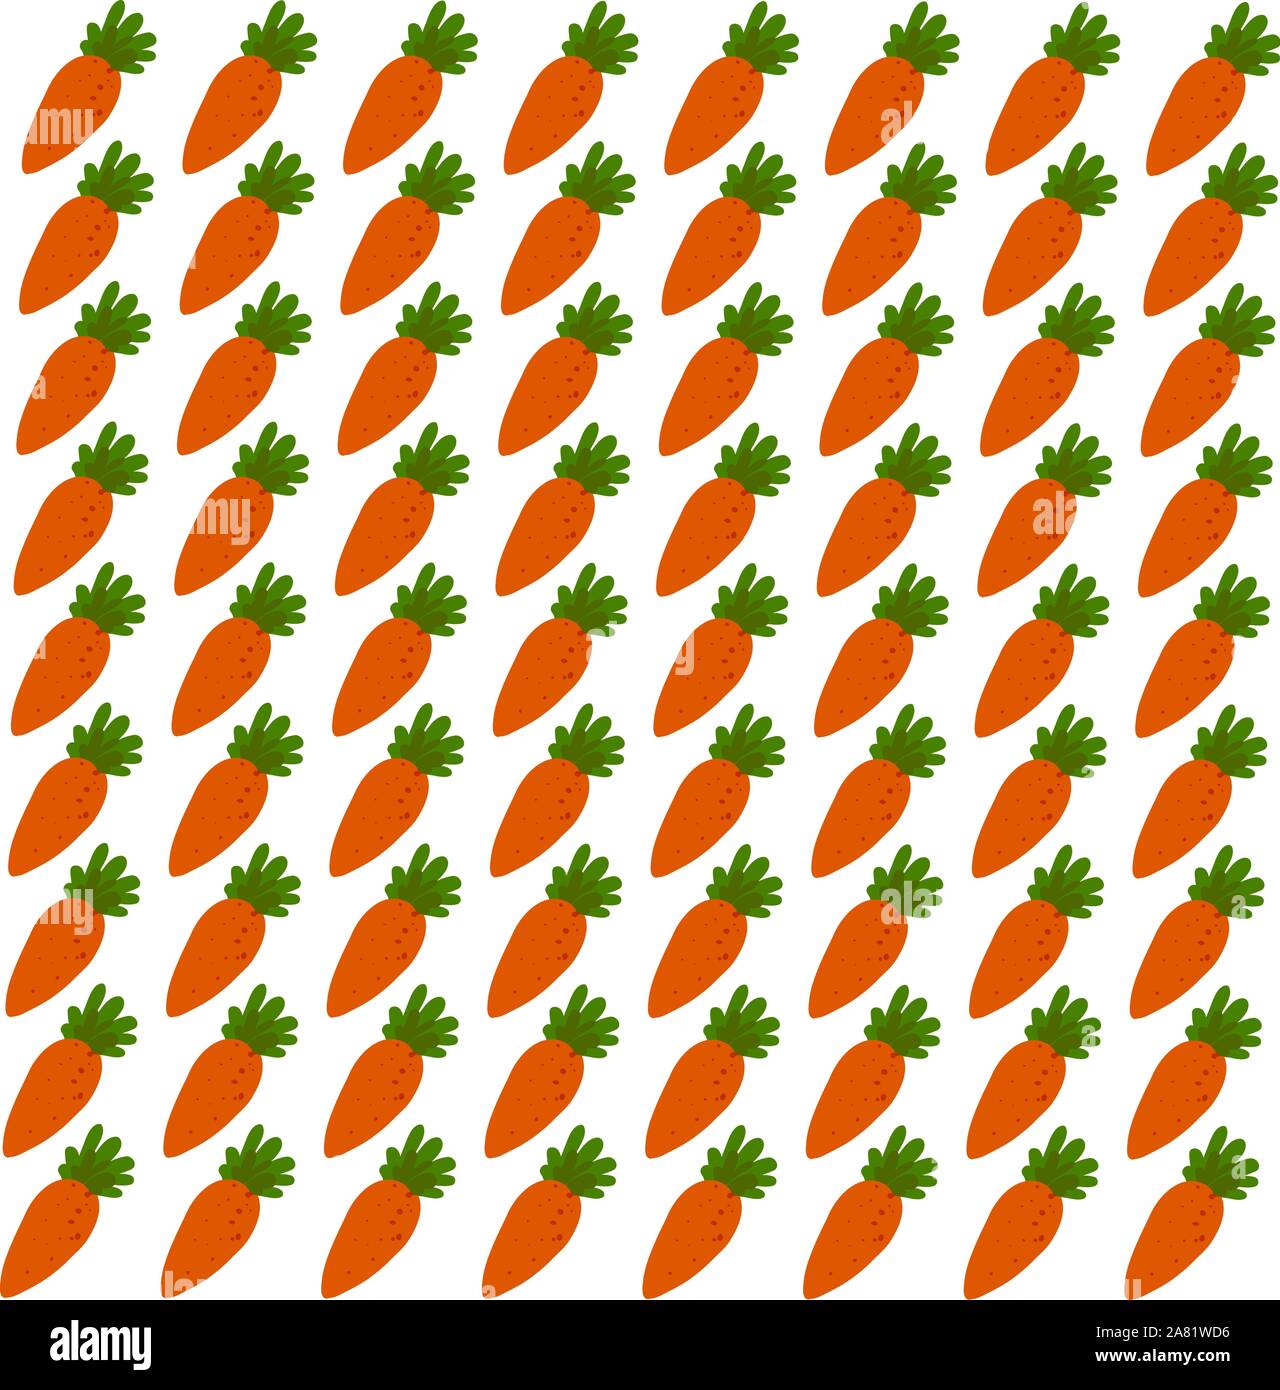 Carrot wallpaper, illustration, vector on white background. Stock Vector